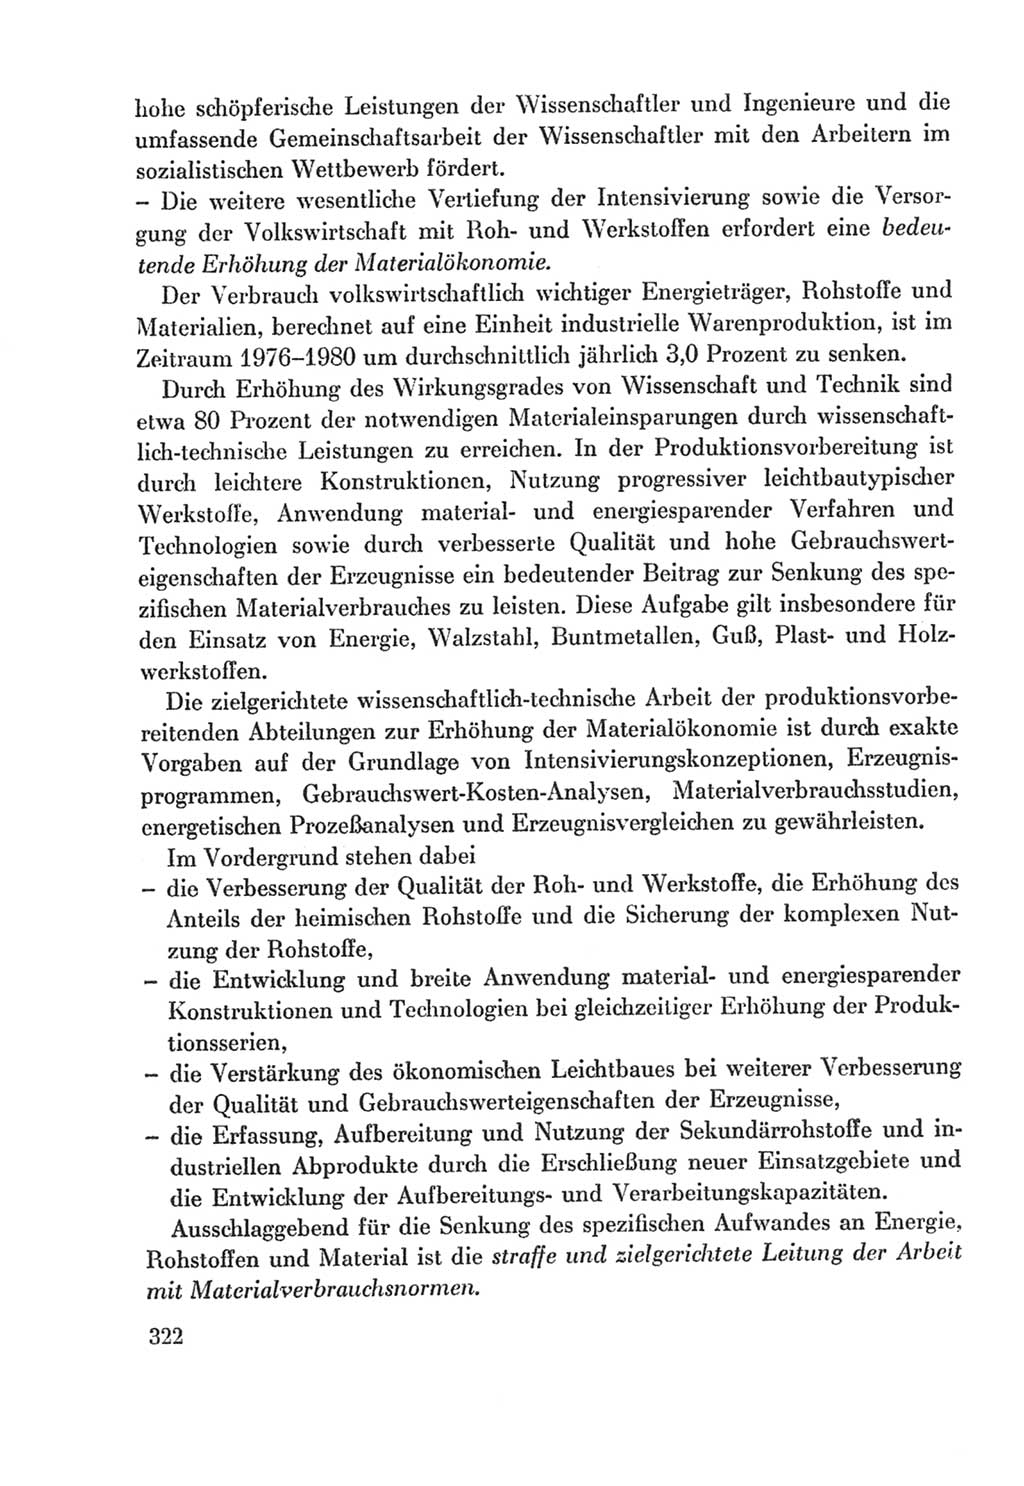 Protokoll der Verhandlungen des Ⅸ. Parteitages der Sozialistischen Einheitspartei Deutschlands (SED) [Deutsche Demokratische Republik (DDR)] 1976, Band 2, Seite 322 (Prot. Verh. Ⅸ. PT SED DDR 1976, Bd. 2, S. 322)